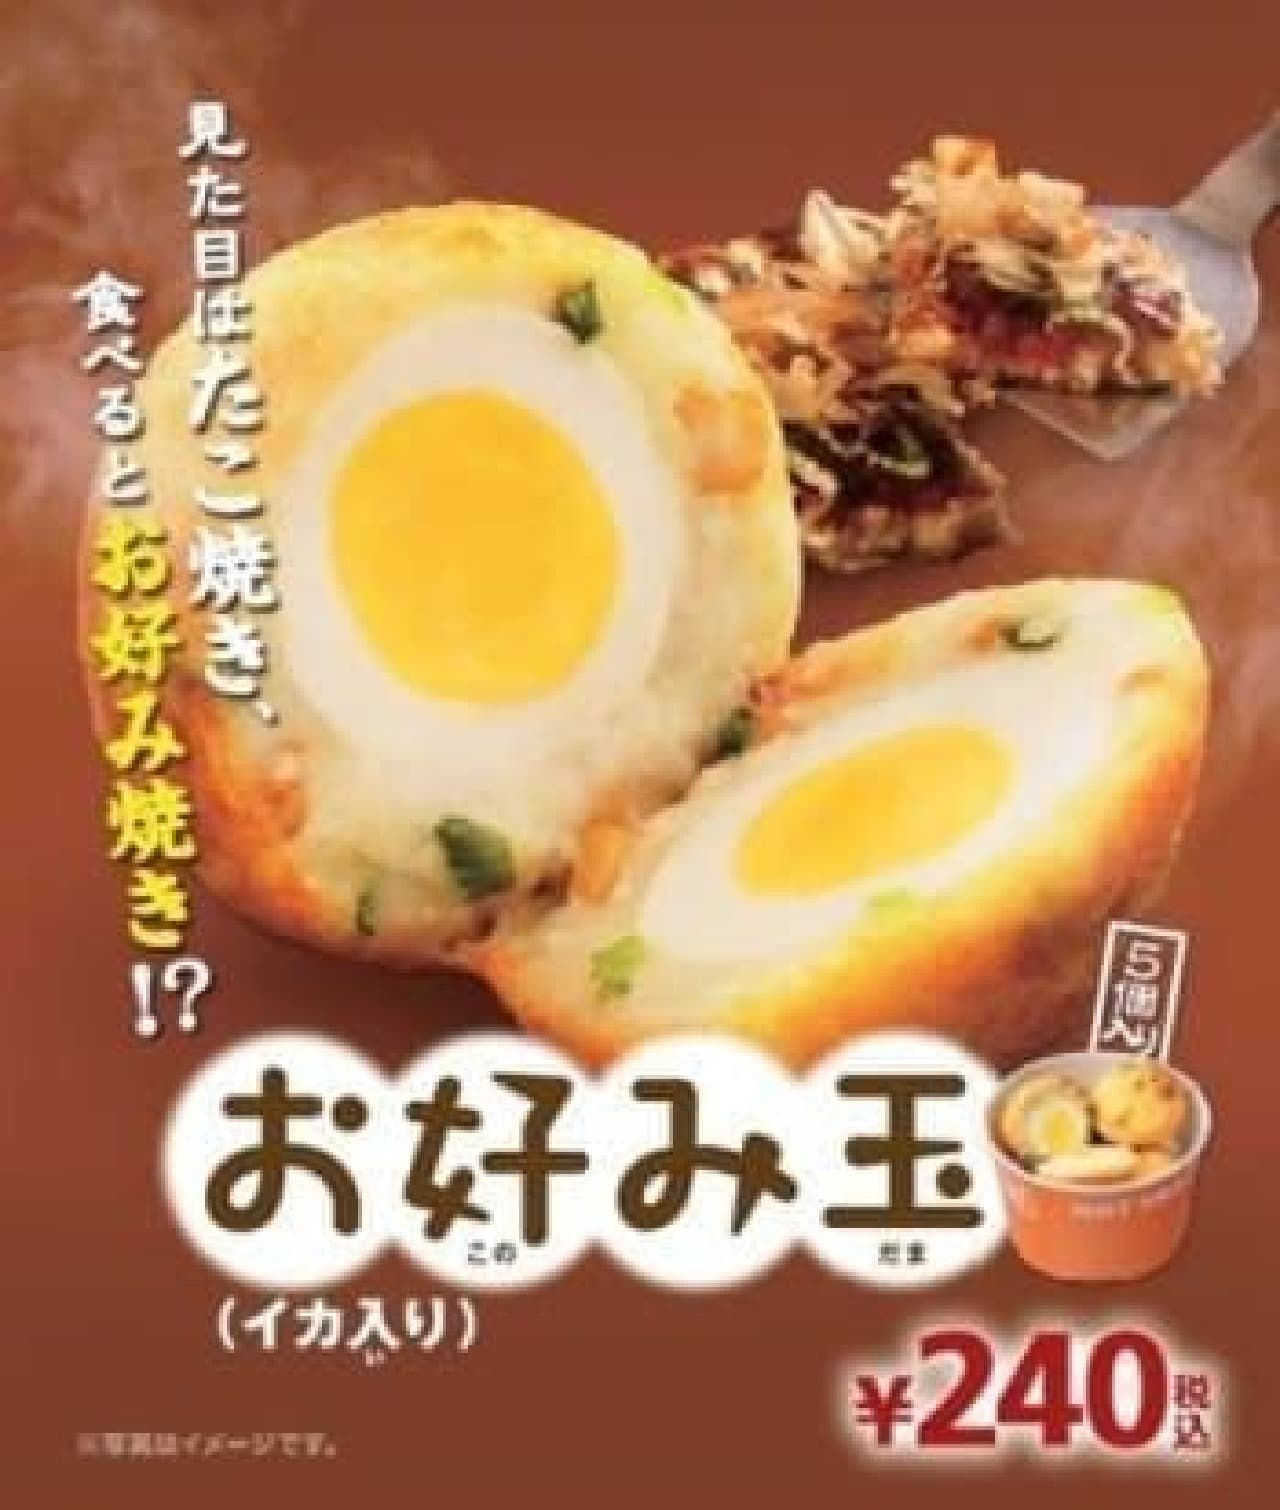 Okonomiyaki? Or is it takoyaki? ??